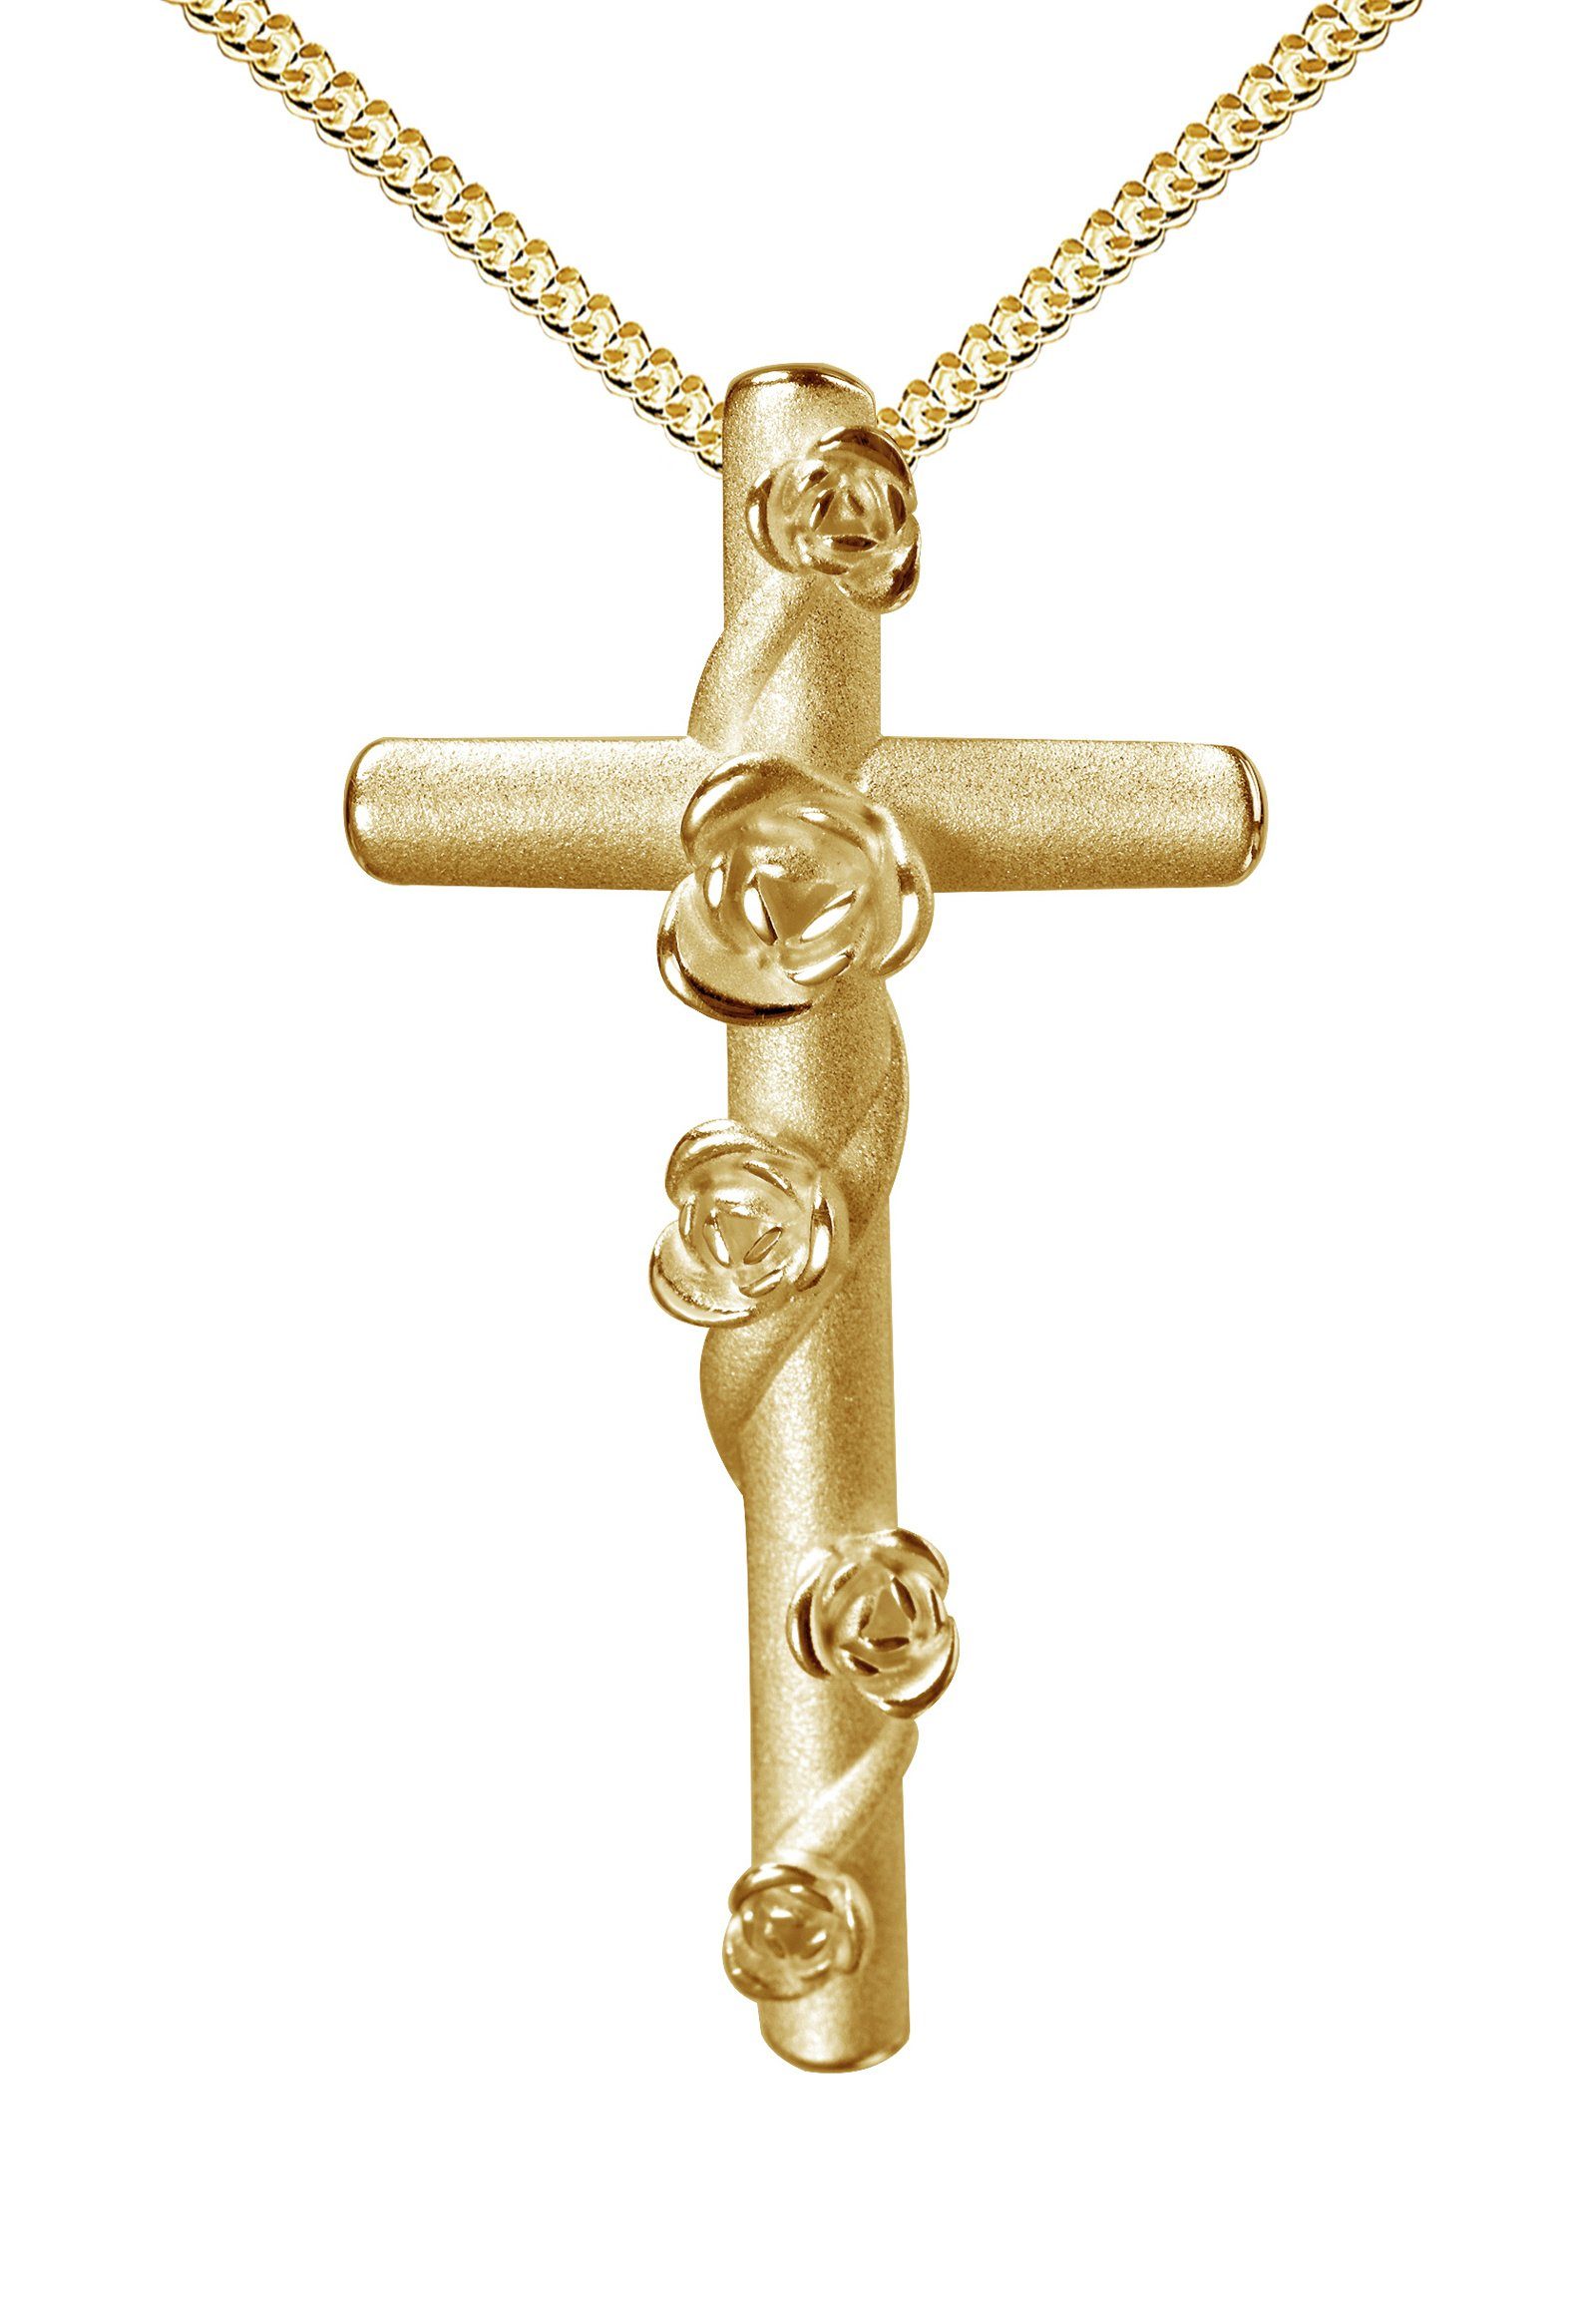 JEVELION Kreuzkette Kreuz Anhänger Silber vergoldet - Made in Germany  (Kette mit Anhänger, für Damen), Mit Panzerkette - Länge wählbar 36 - 70 cm.